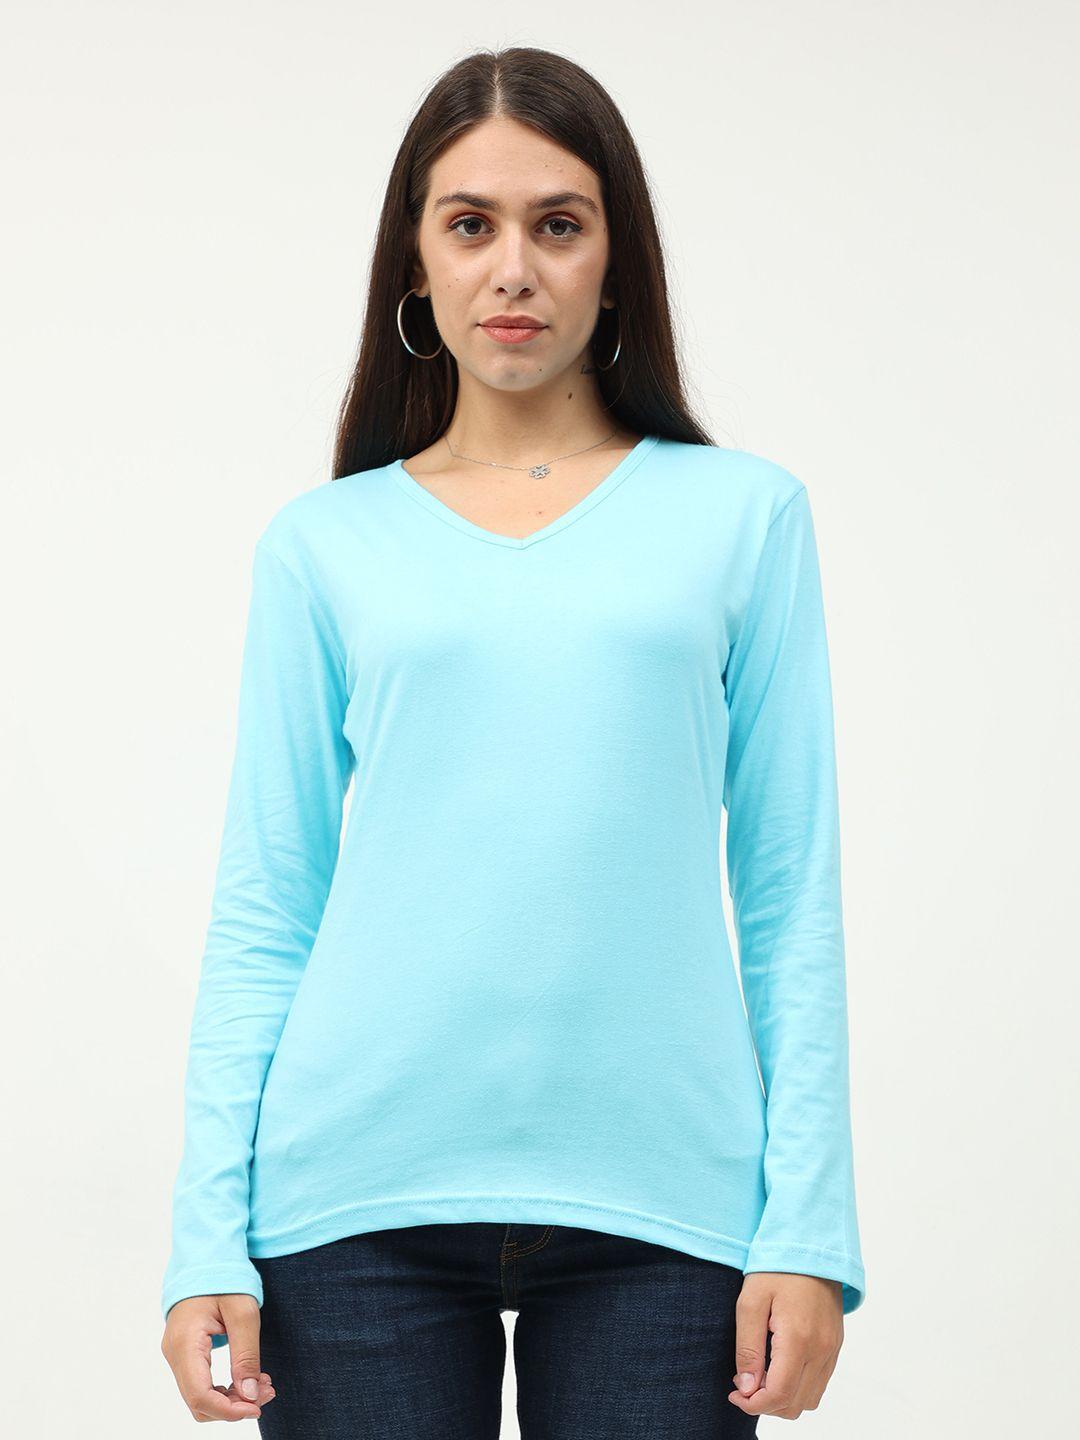 fleximaa-women-blue-v-neck-t-shirt